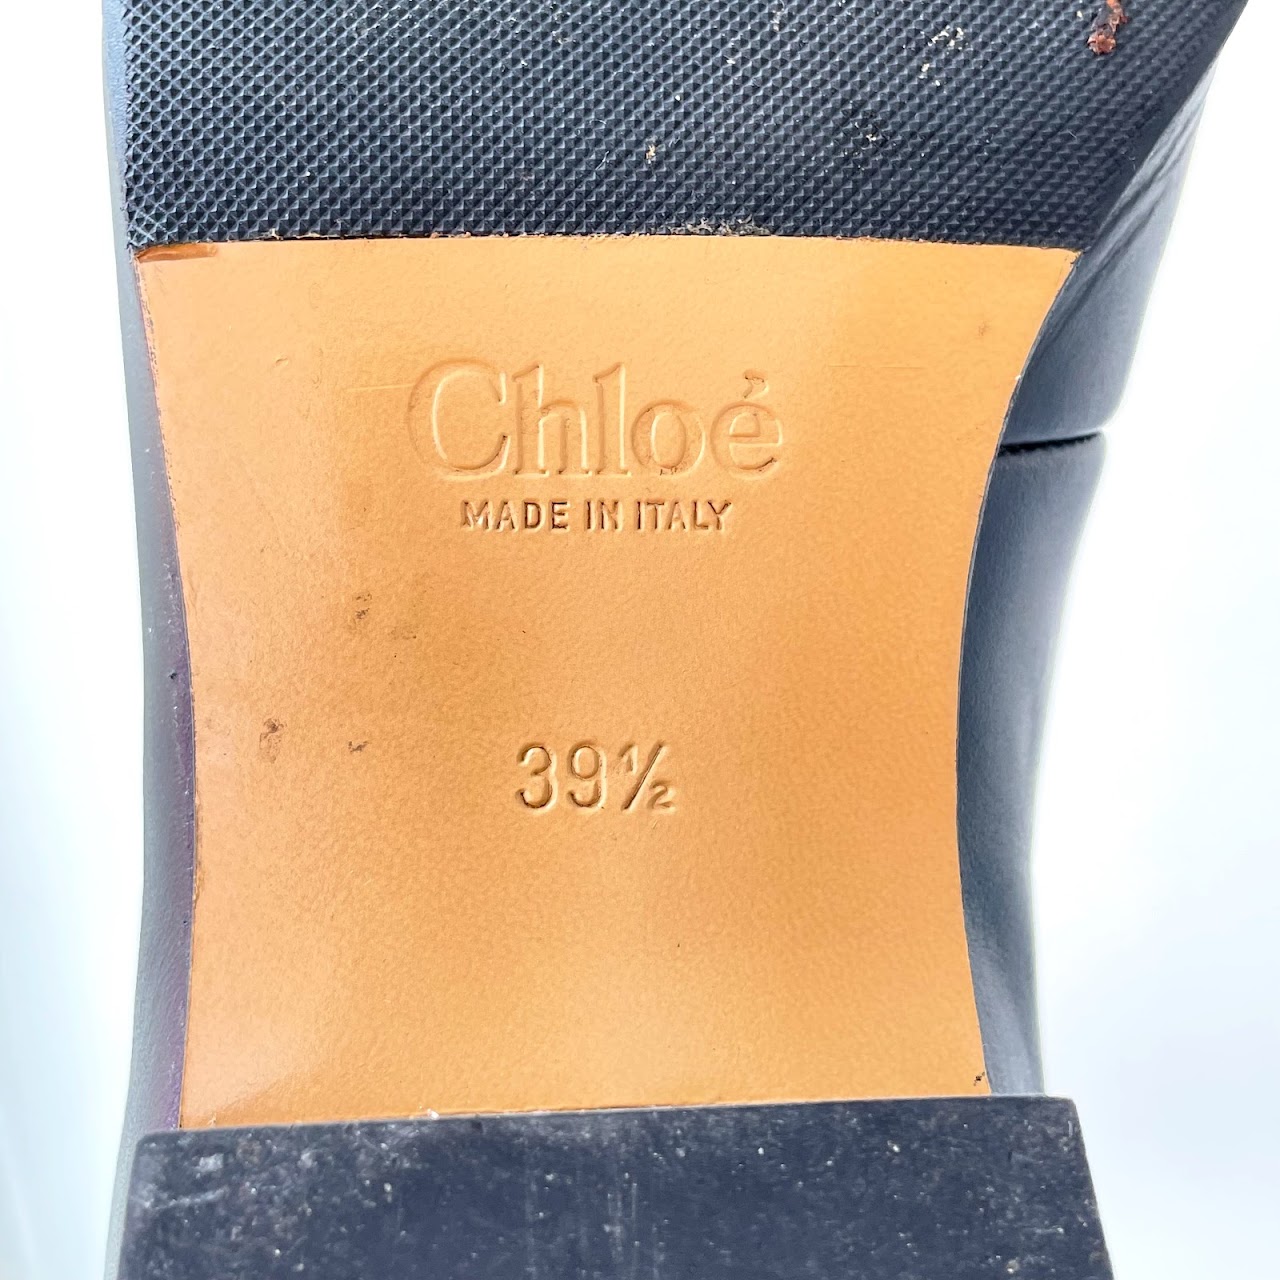 Chloé 'C' Chelsea Boots